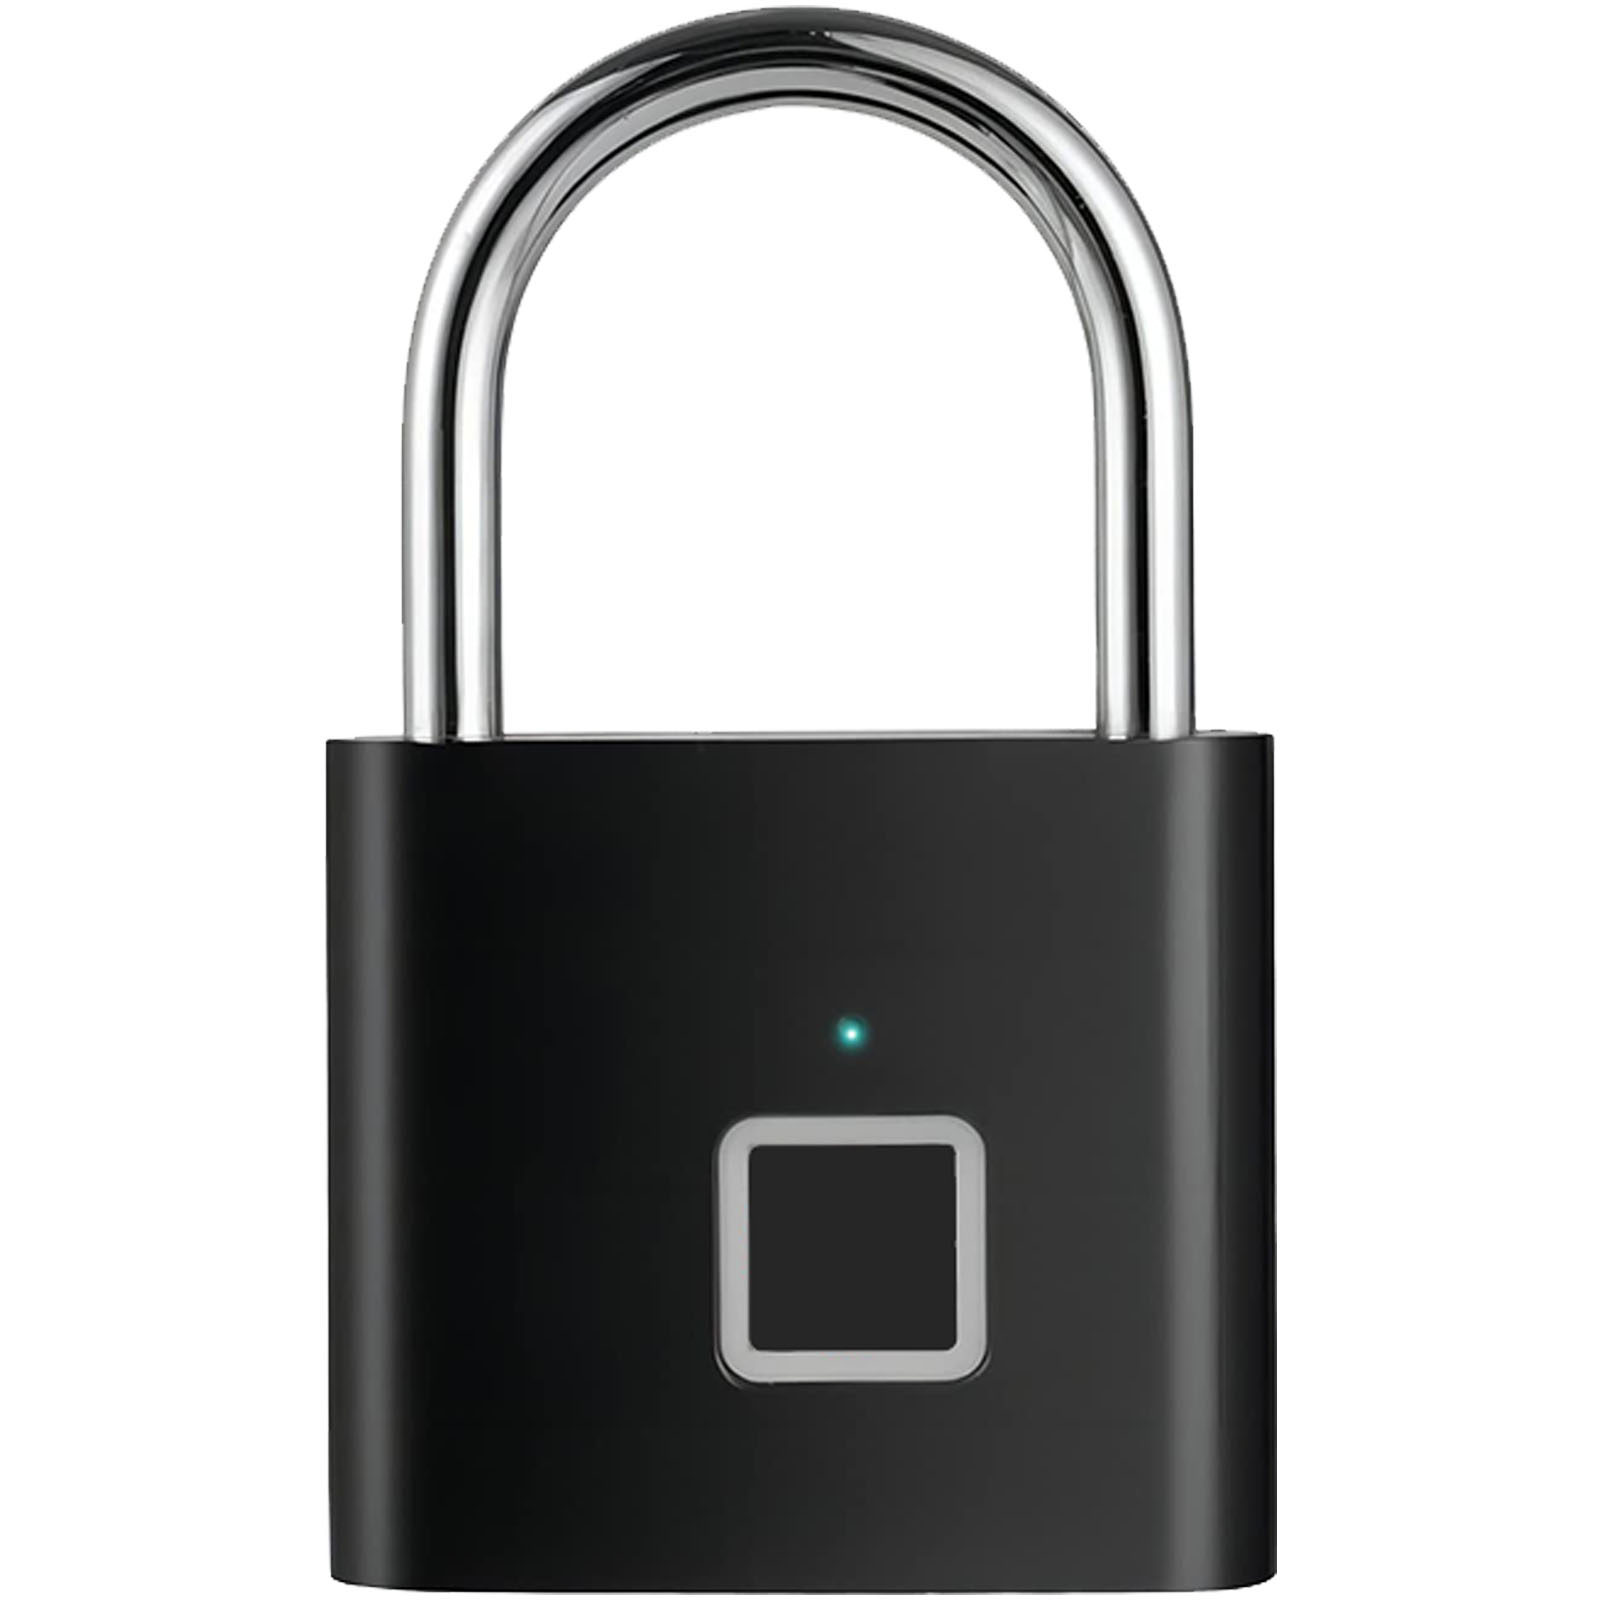 SCX.design T11 smart fingerprint padlock - Southport